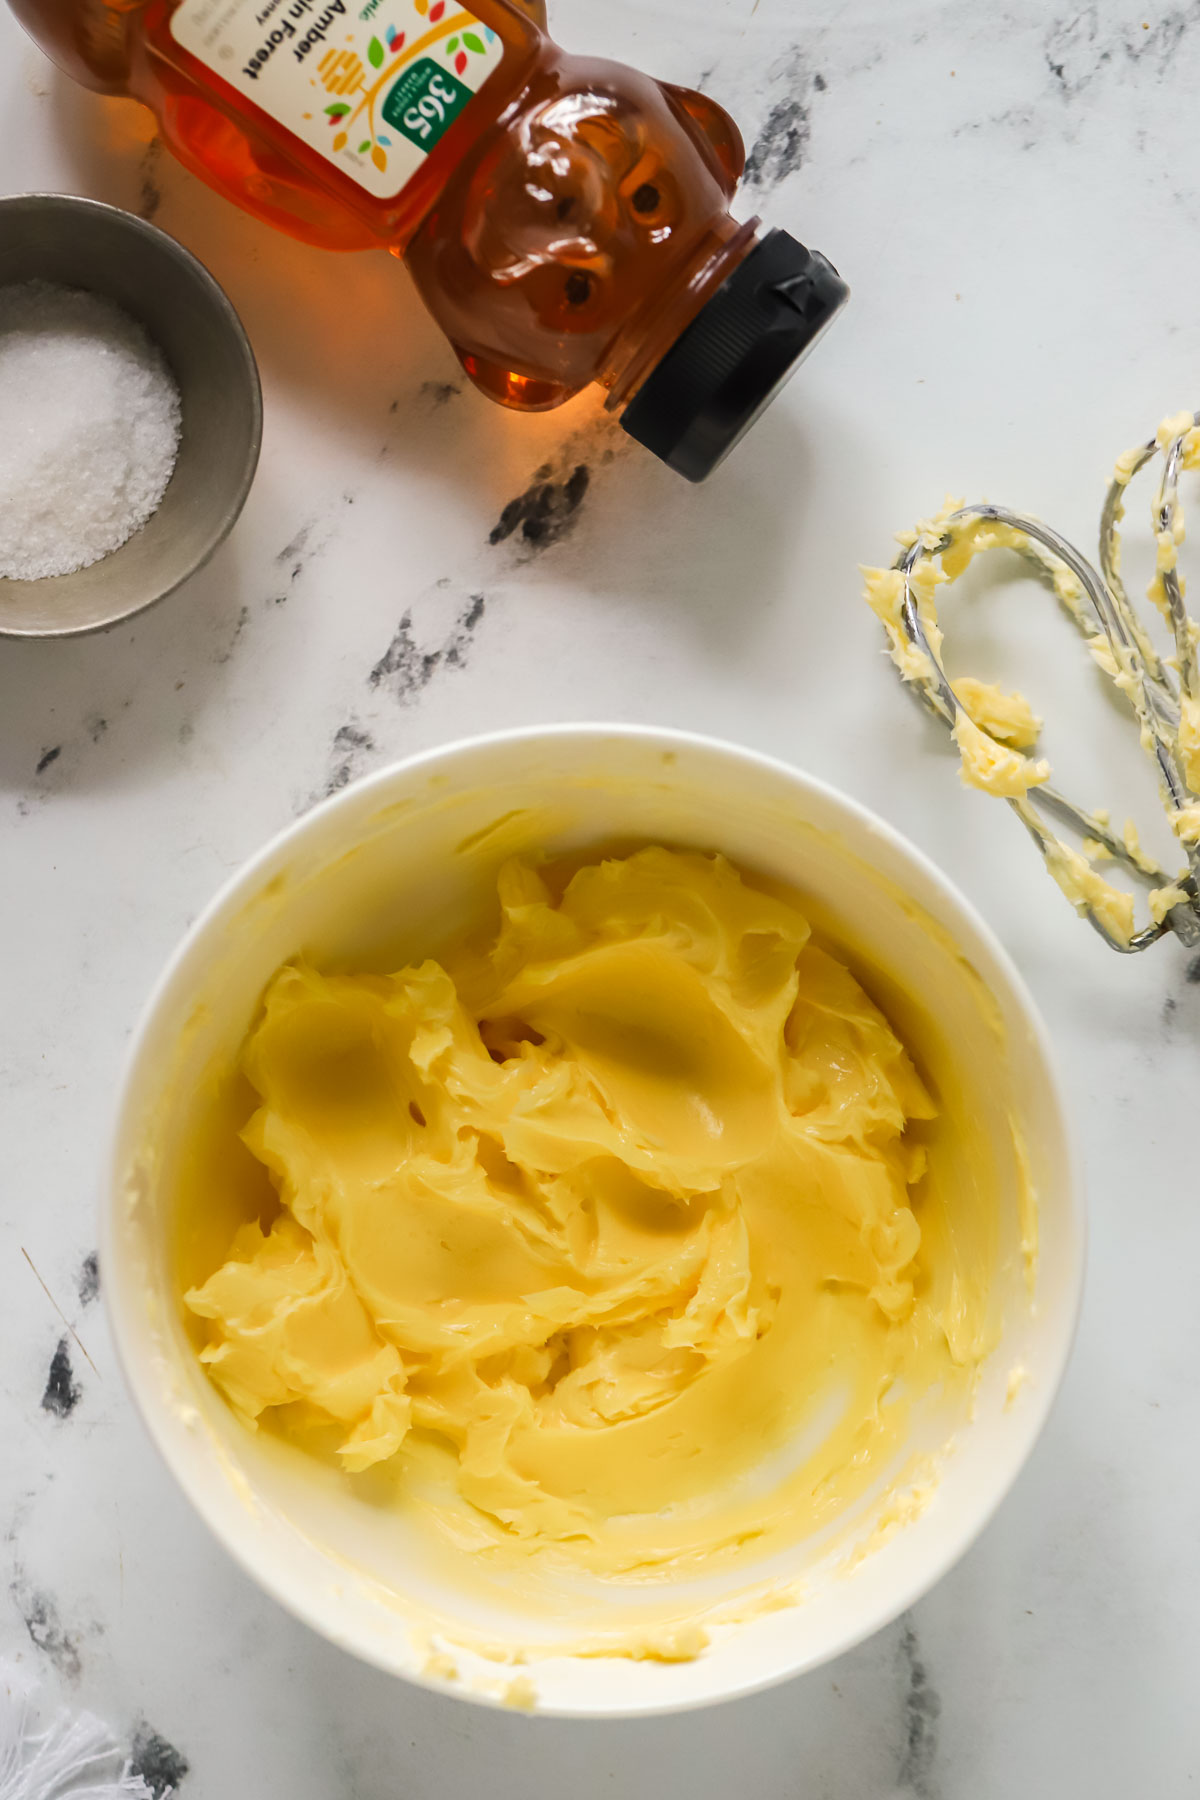 creamed butter in a bowl, a honey bear, dish of salt